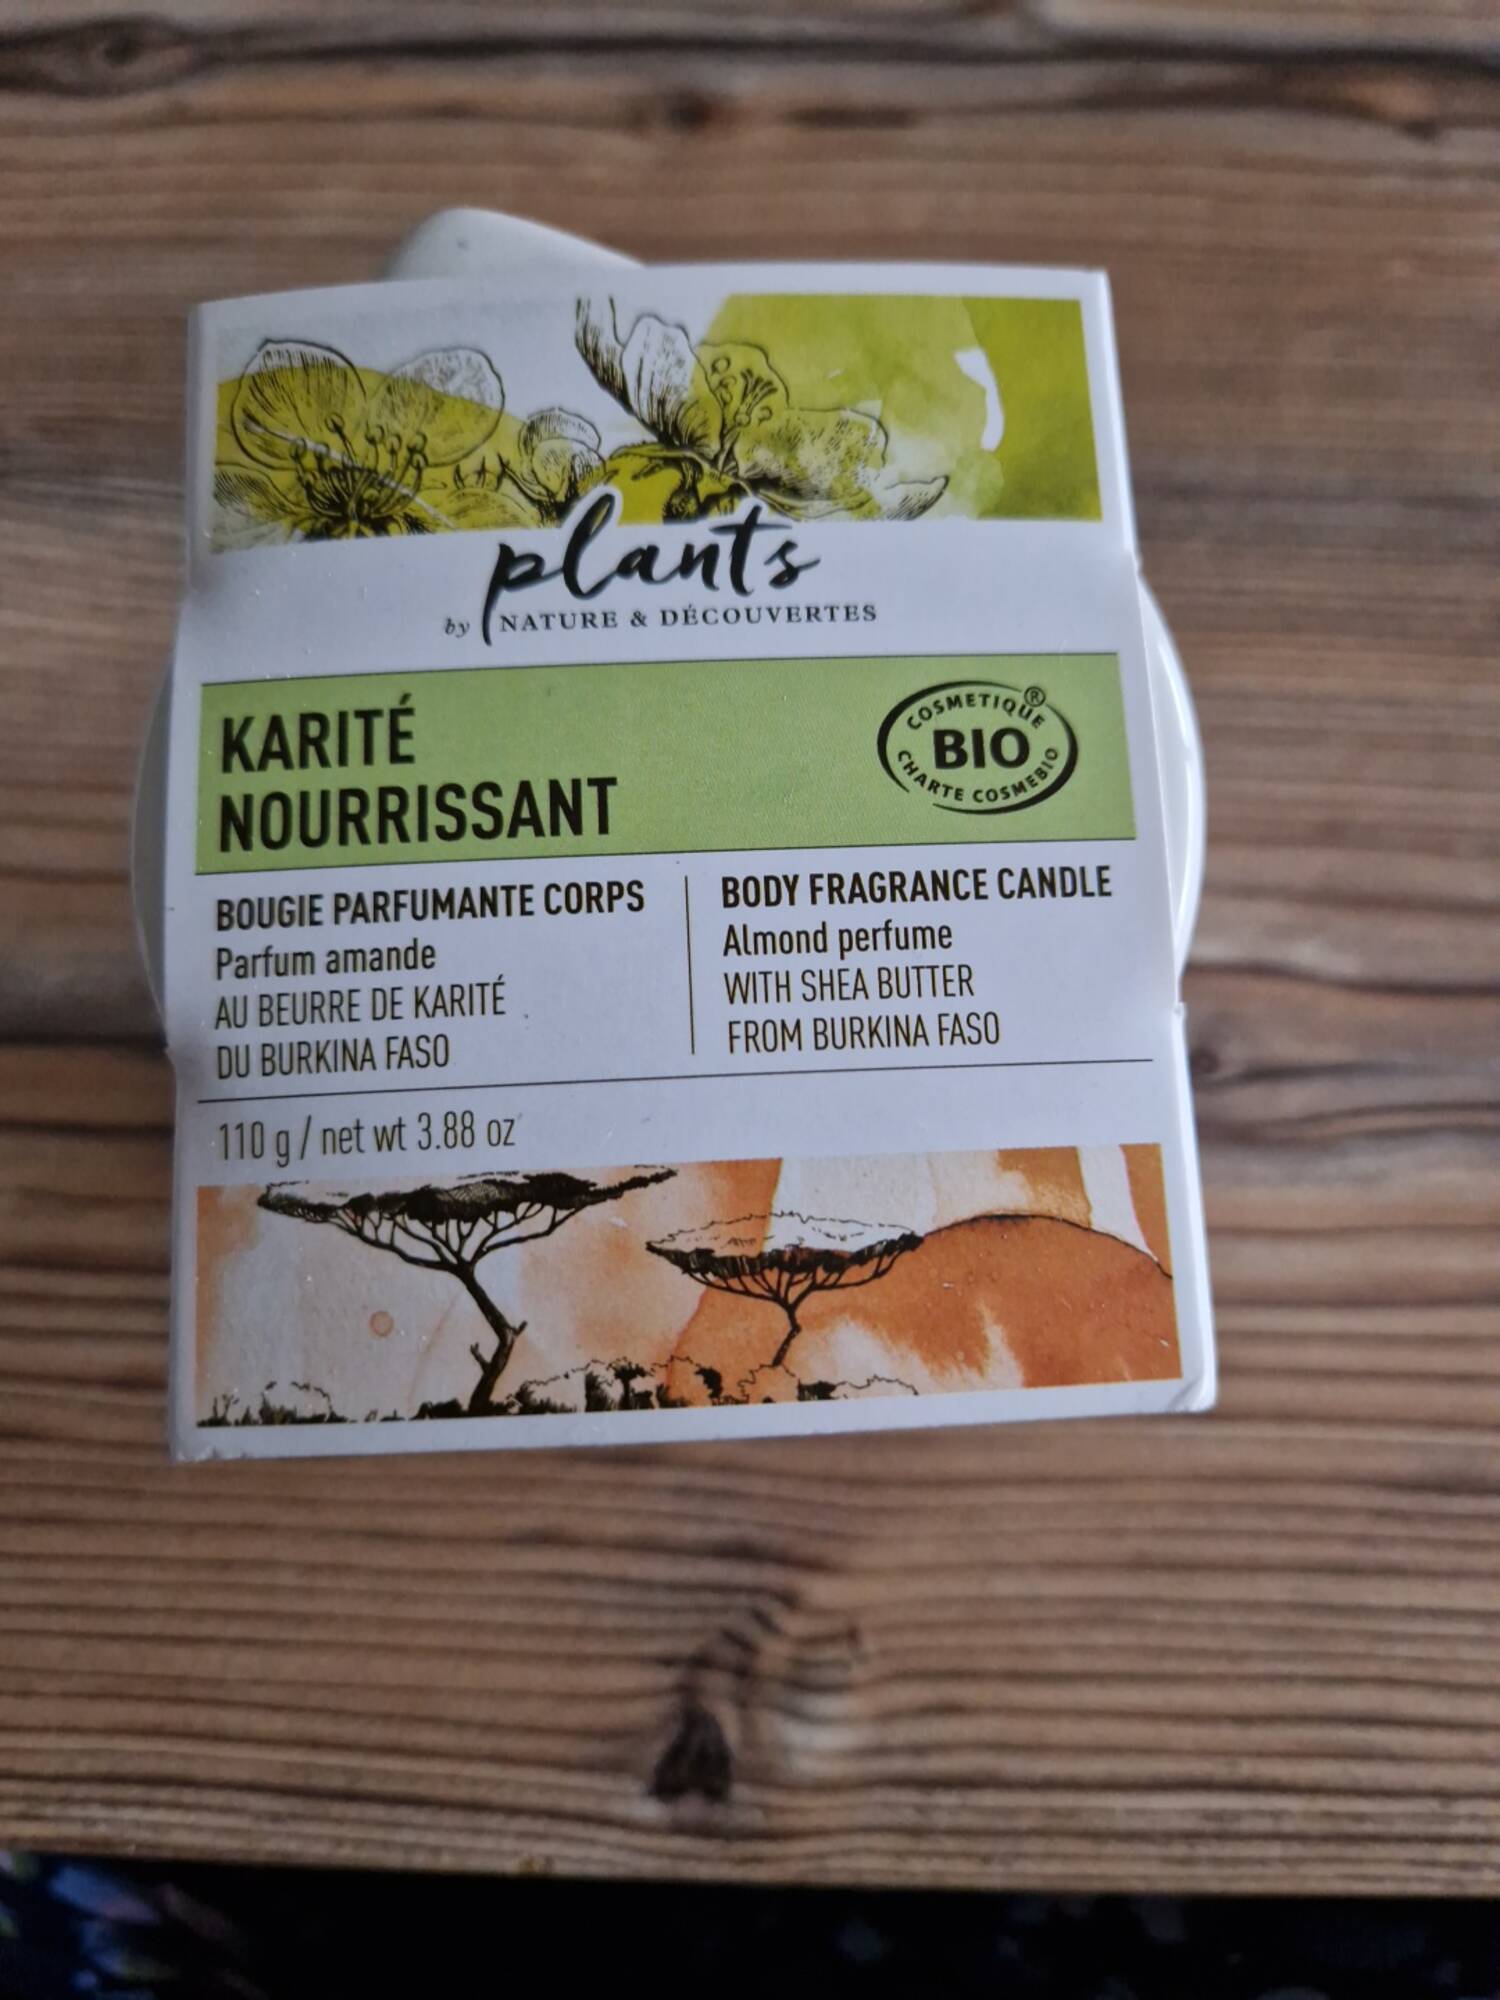 PLANTS BY NATURE & DÉCOUVERTES - Karité nourrissant - Bougie parfumante corps